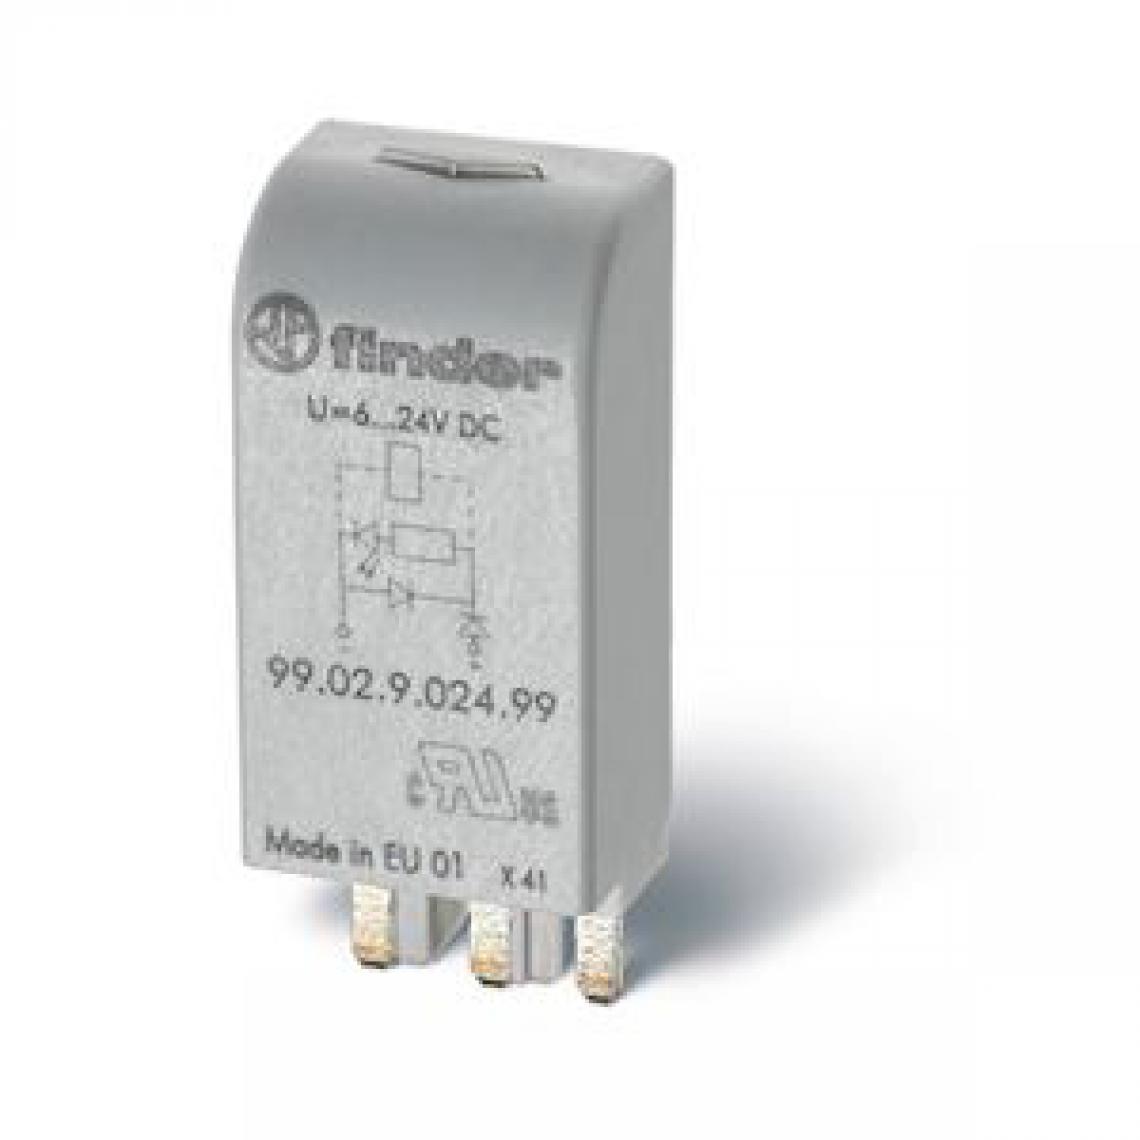 Finder - module led + diode - 28 à 60 vdc - pour socle 9505 9404 9003 9203 9701 - finder 9902906099 - Autres équipements modulaires